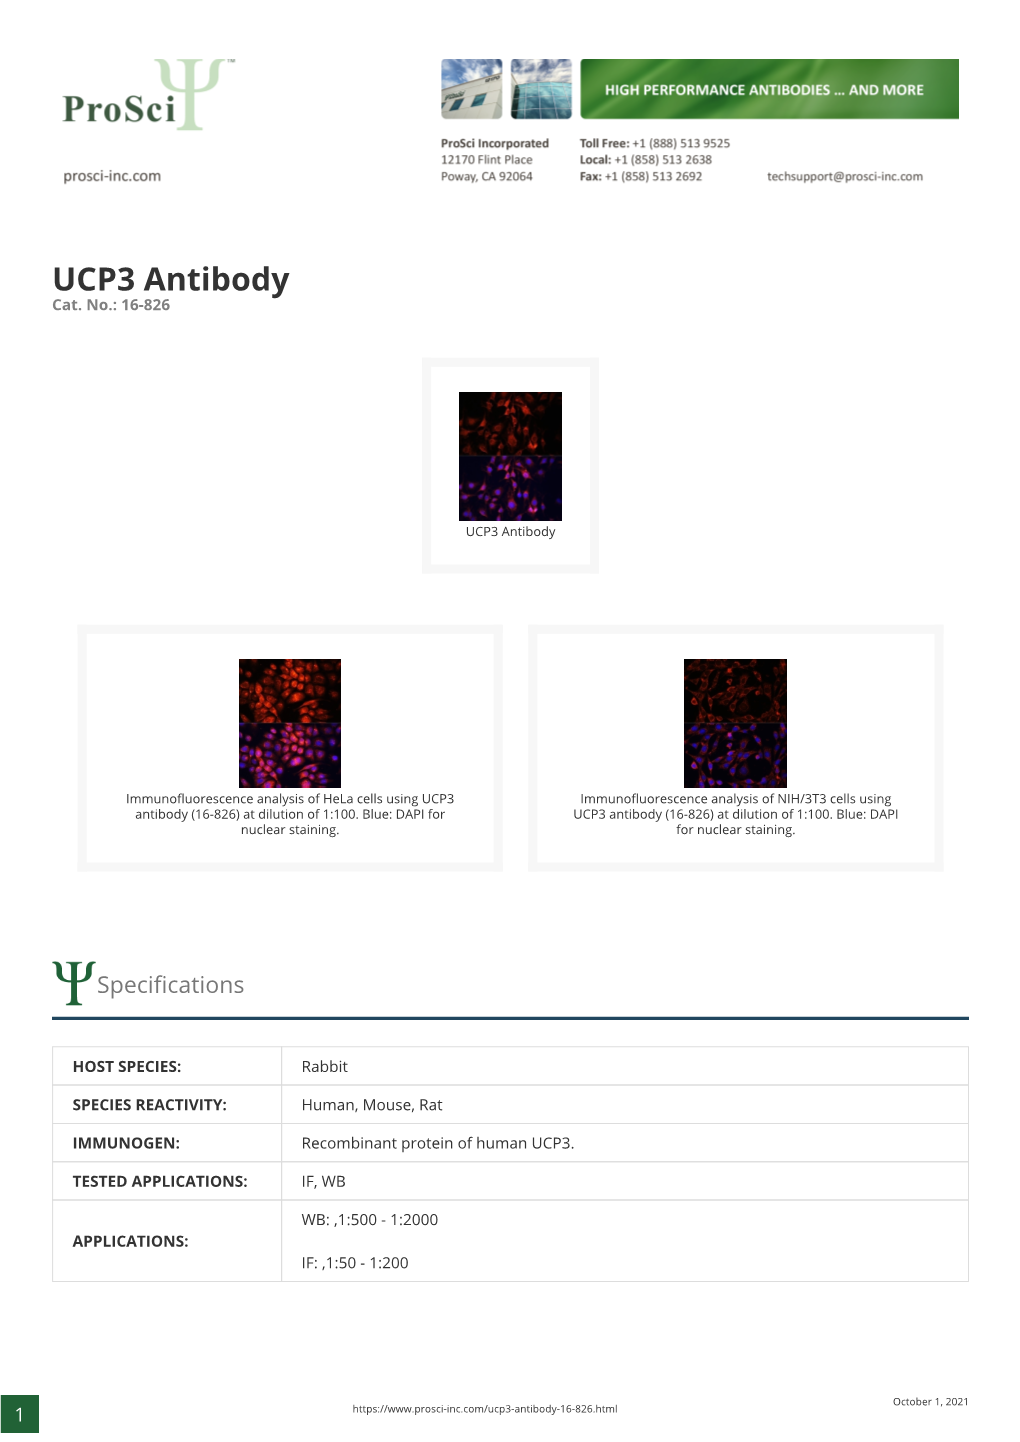 UCP3 Antibody Cat